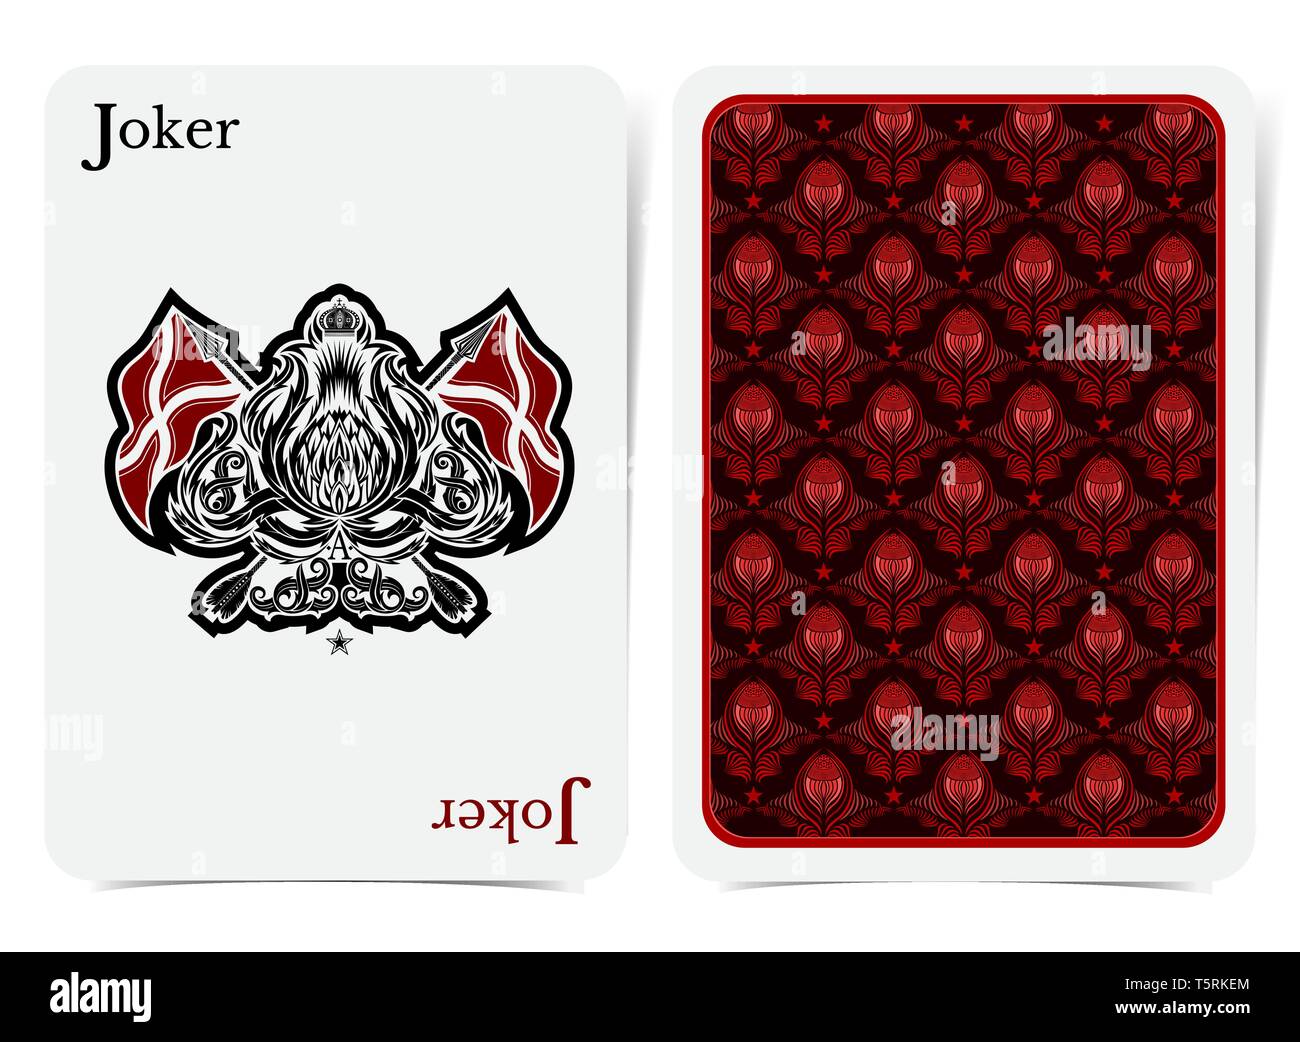 Angesichts der Joker Card thistle Anlage Muster mit gekreuzten Regarding Joker Card Template